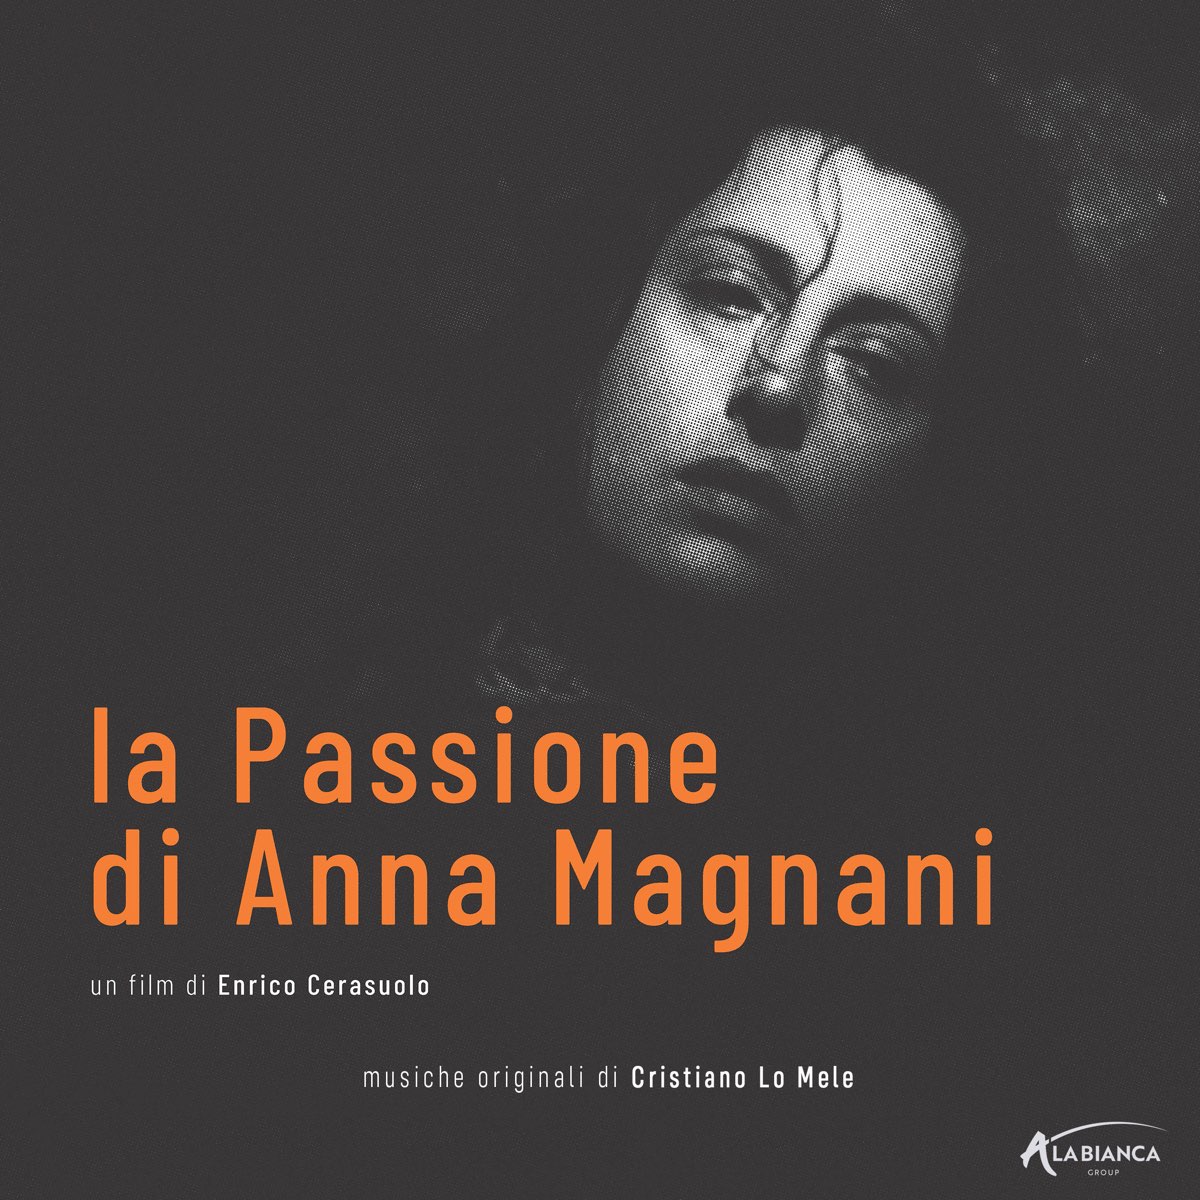 ‎La passione di Anna Magnani (Colonna sonora originale del film) by ...